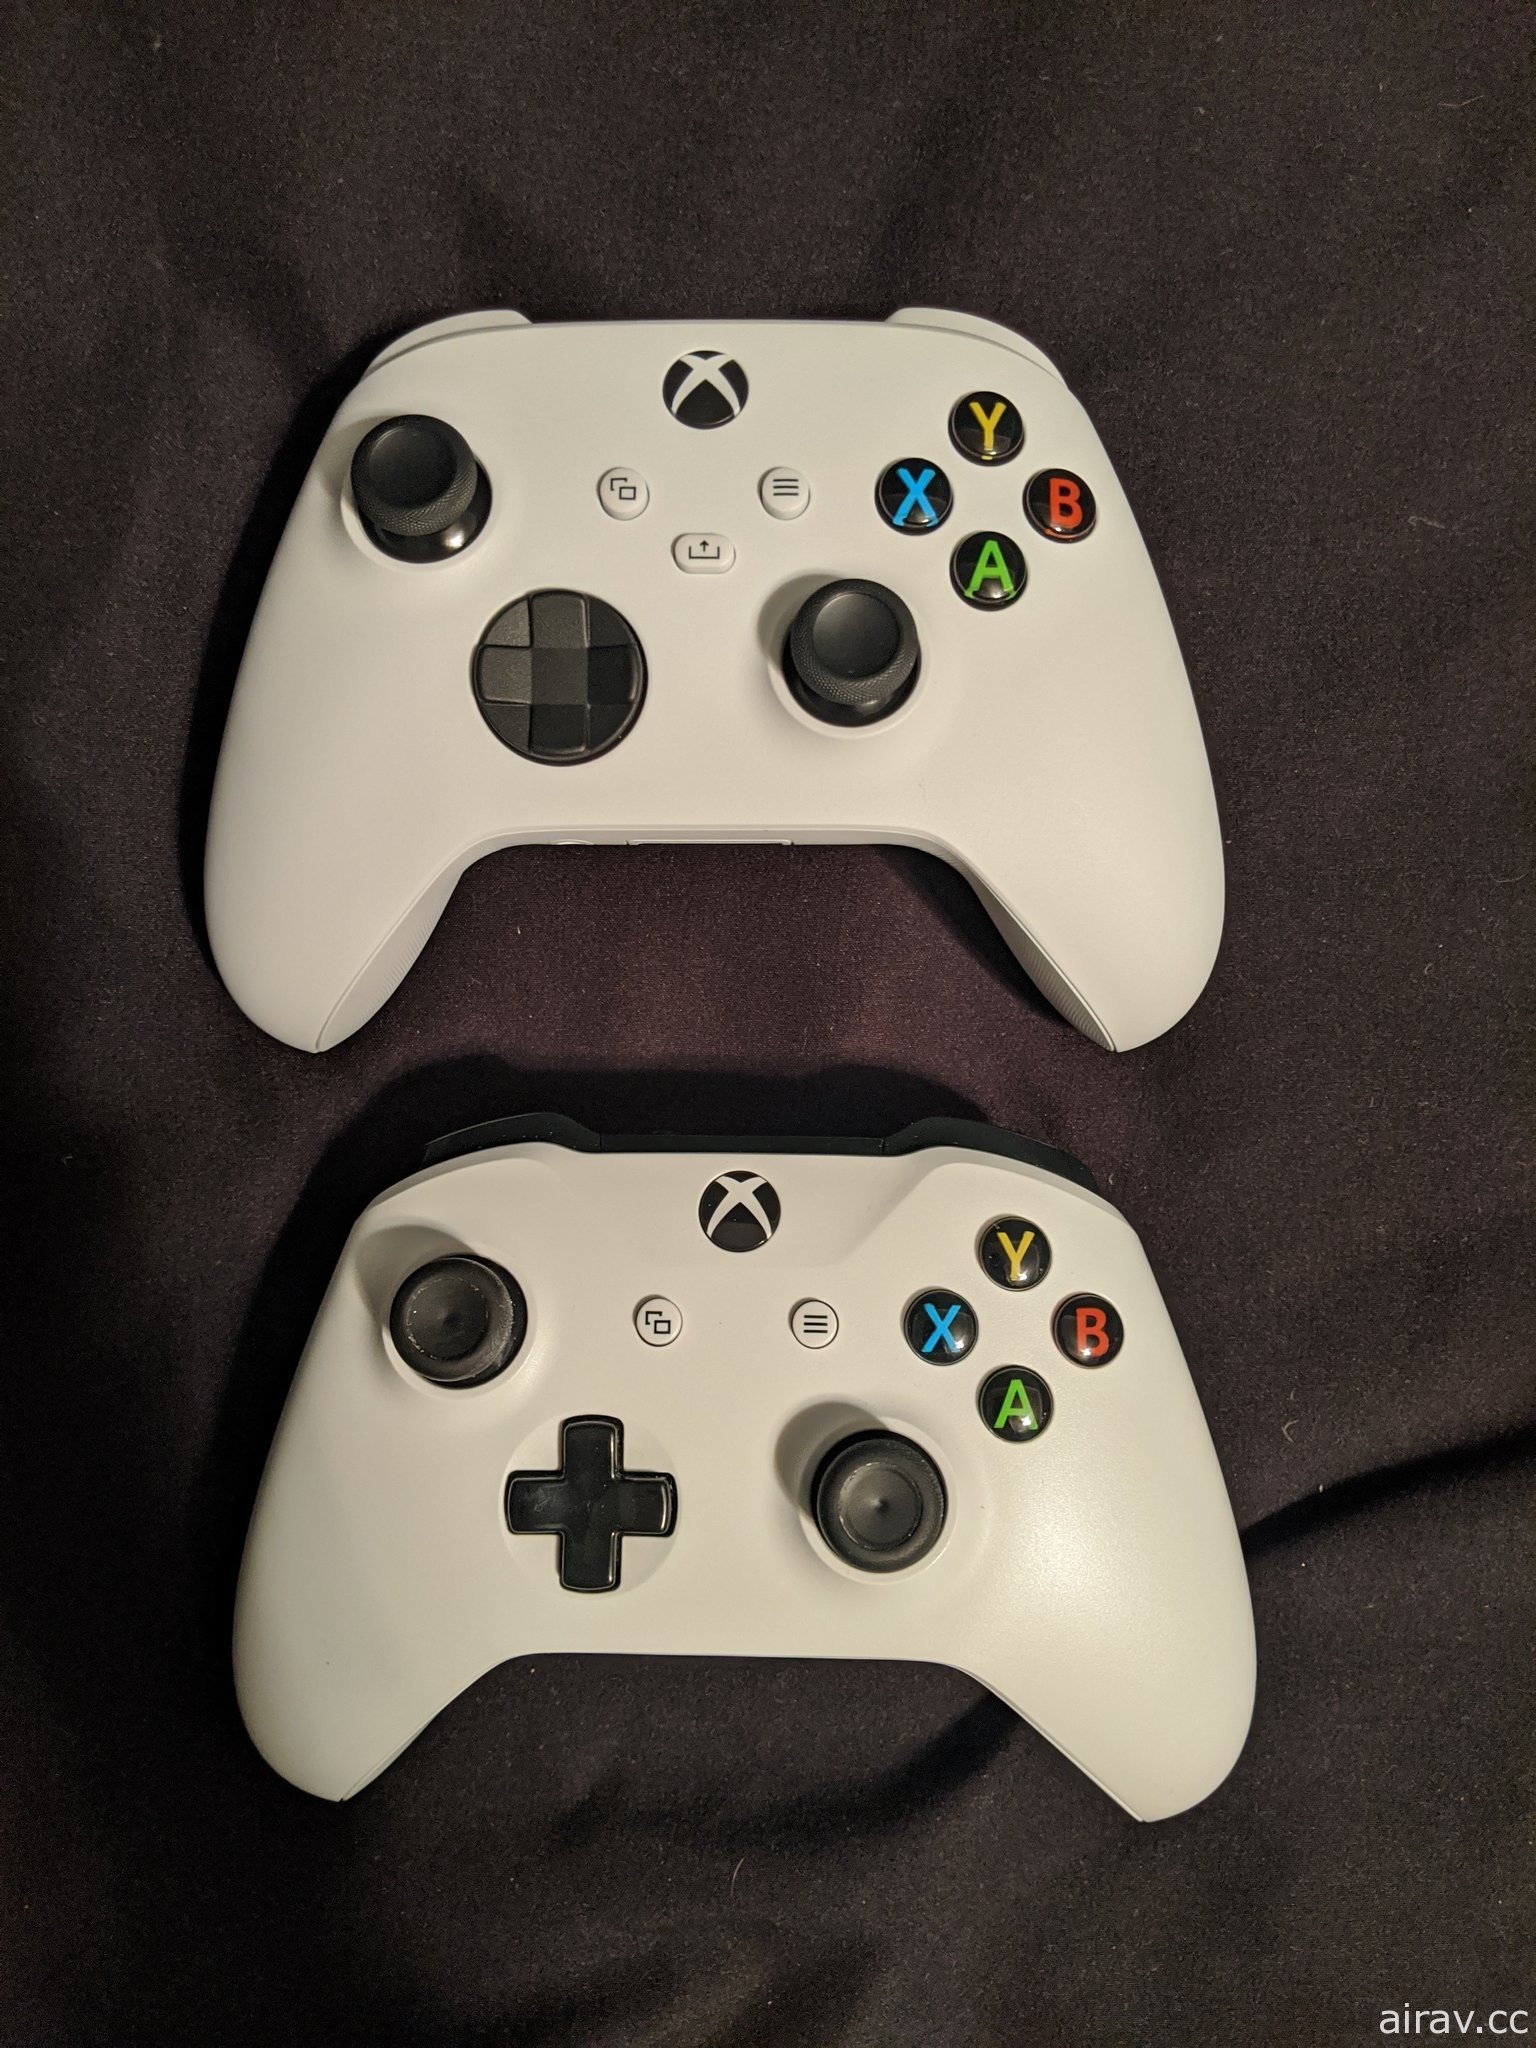 傳 Xbox Series X 新型控制器已流入市面 說明書透露低階版新主機「Series S」訊息